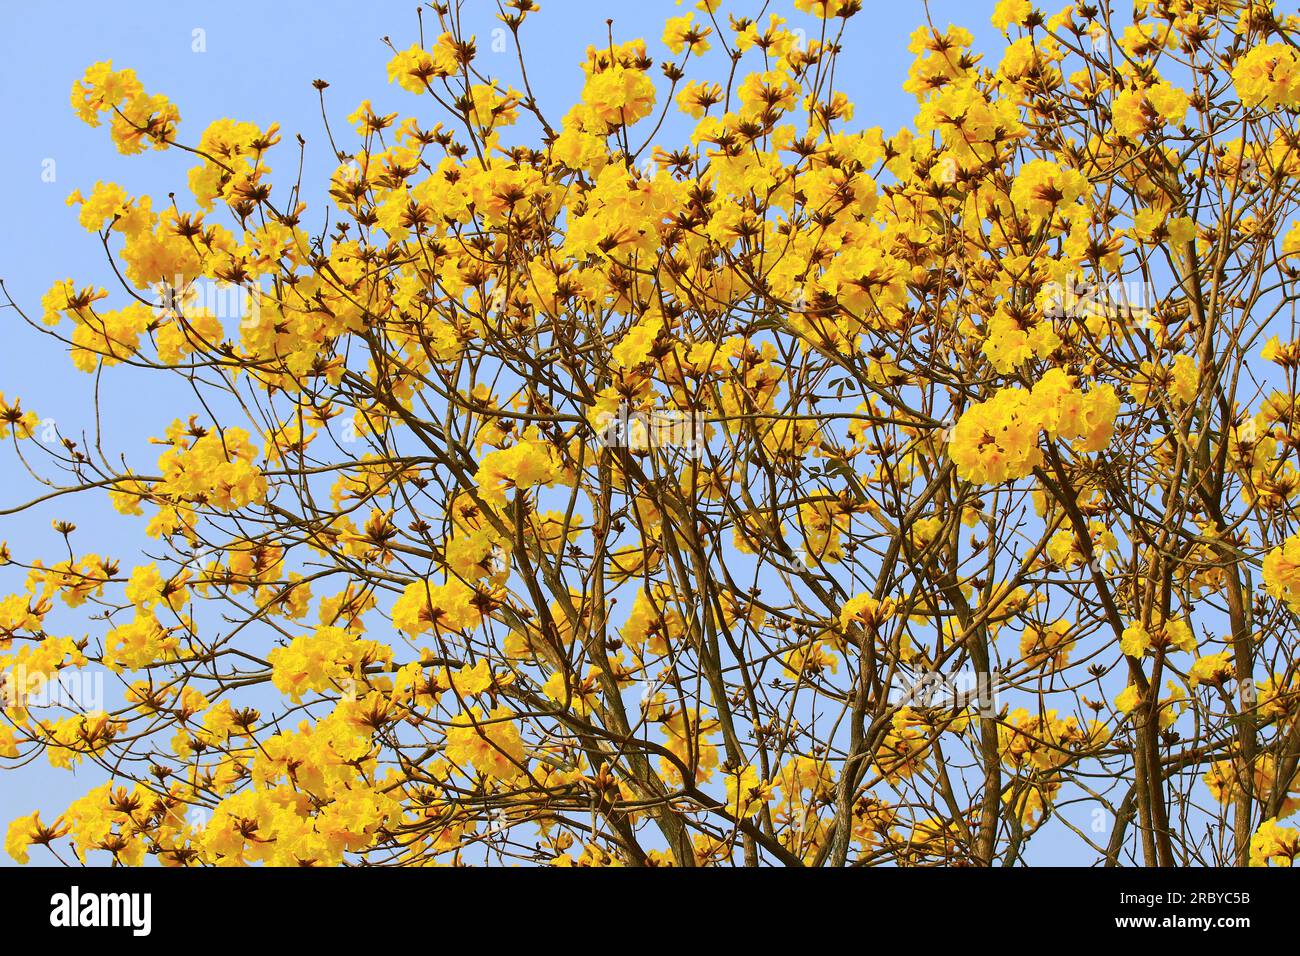 Fiori in fiore dell'albero della tromba d'oro con sfondo blu, primo piano di fiori gialli che fioriscono sui rami in una giornata di sole Foto Stock